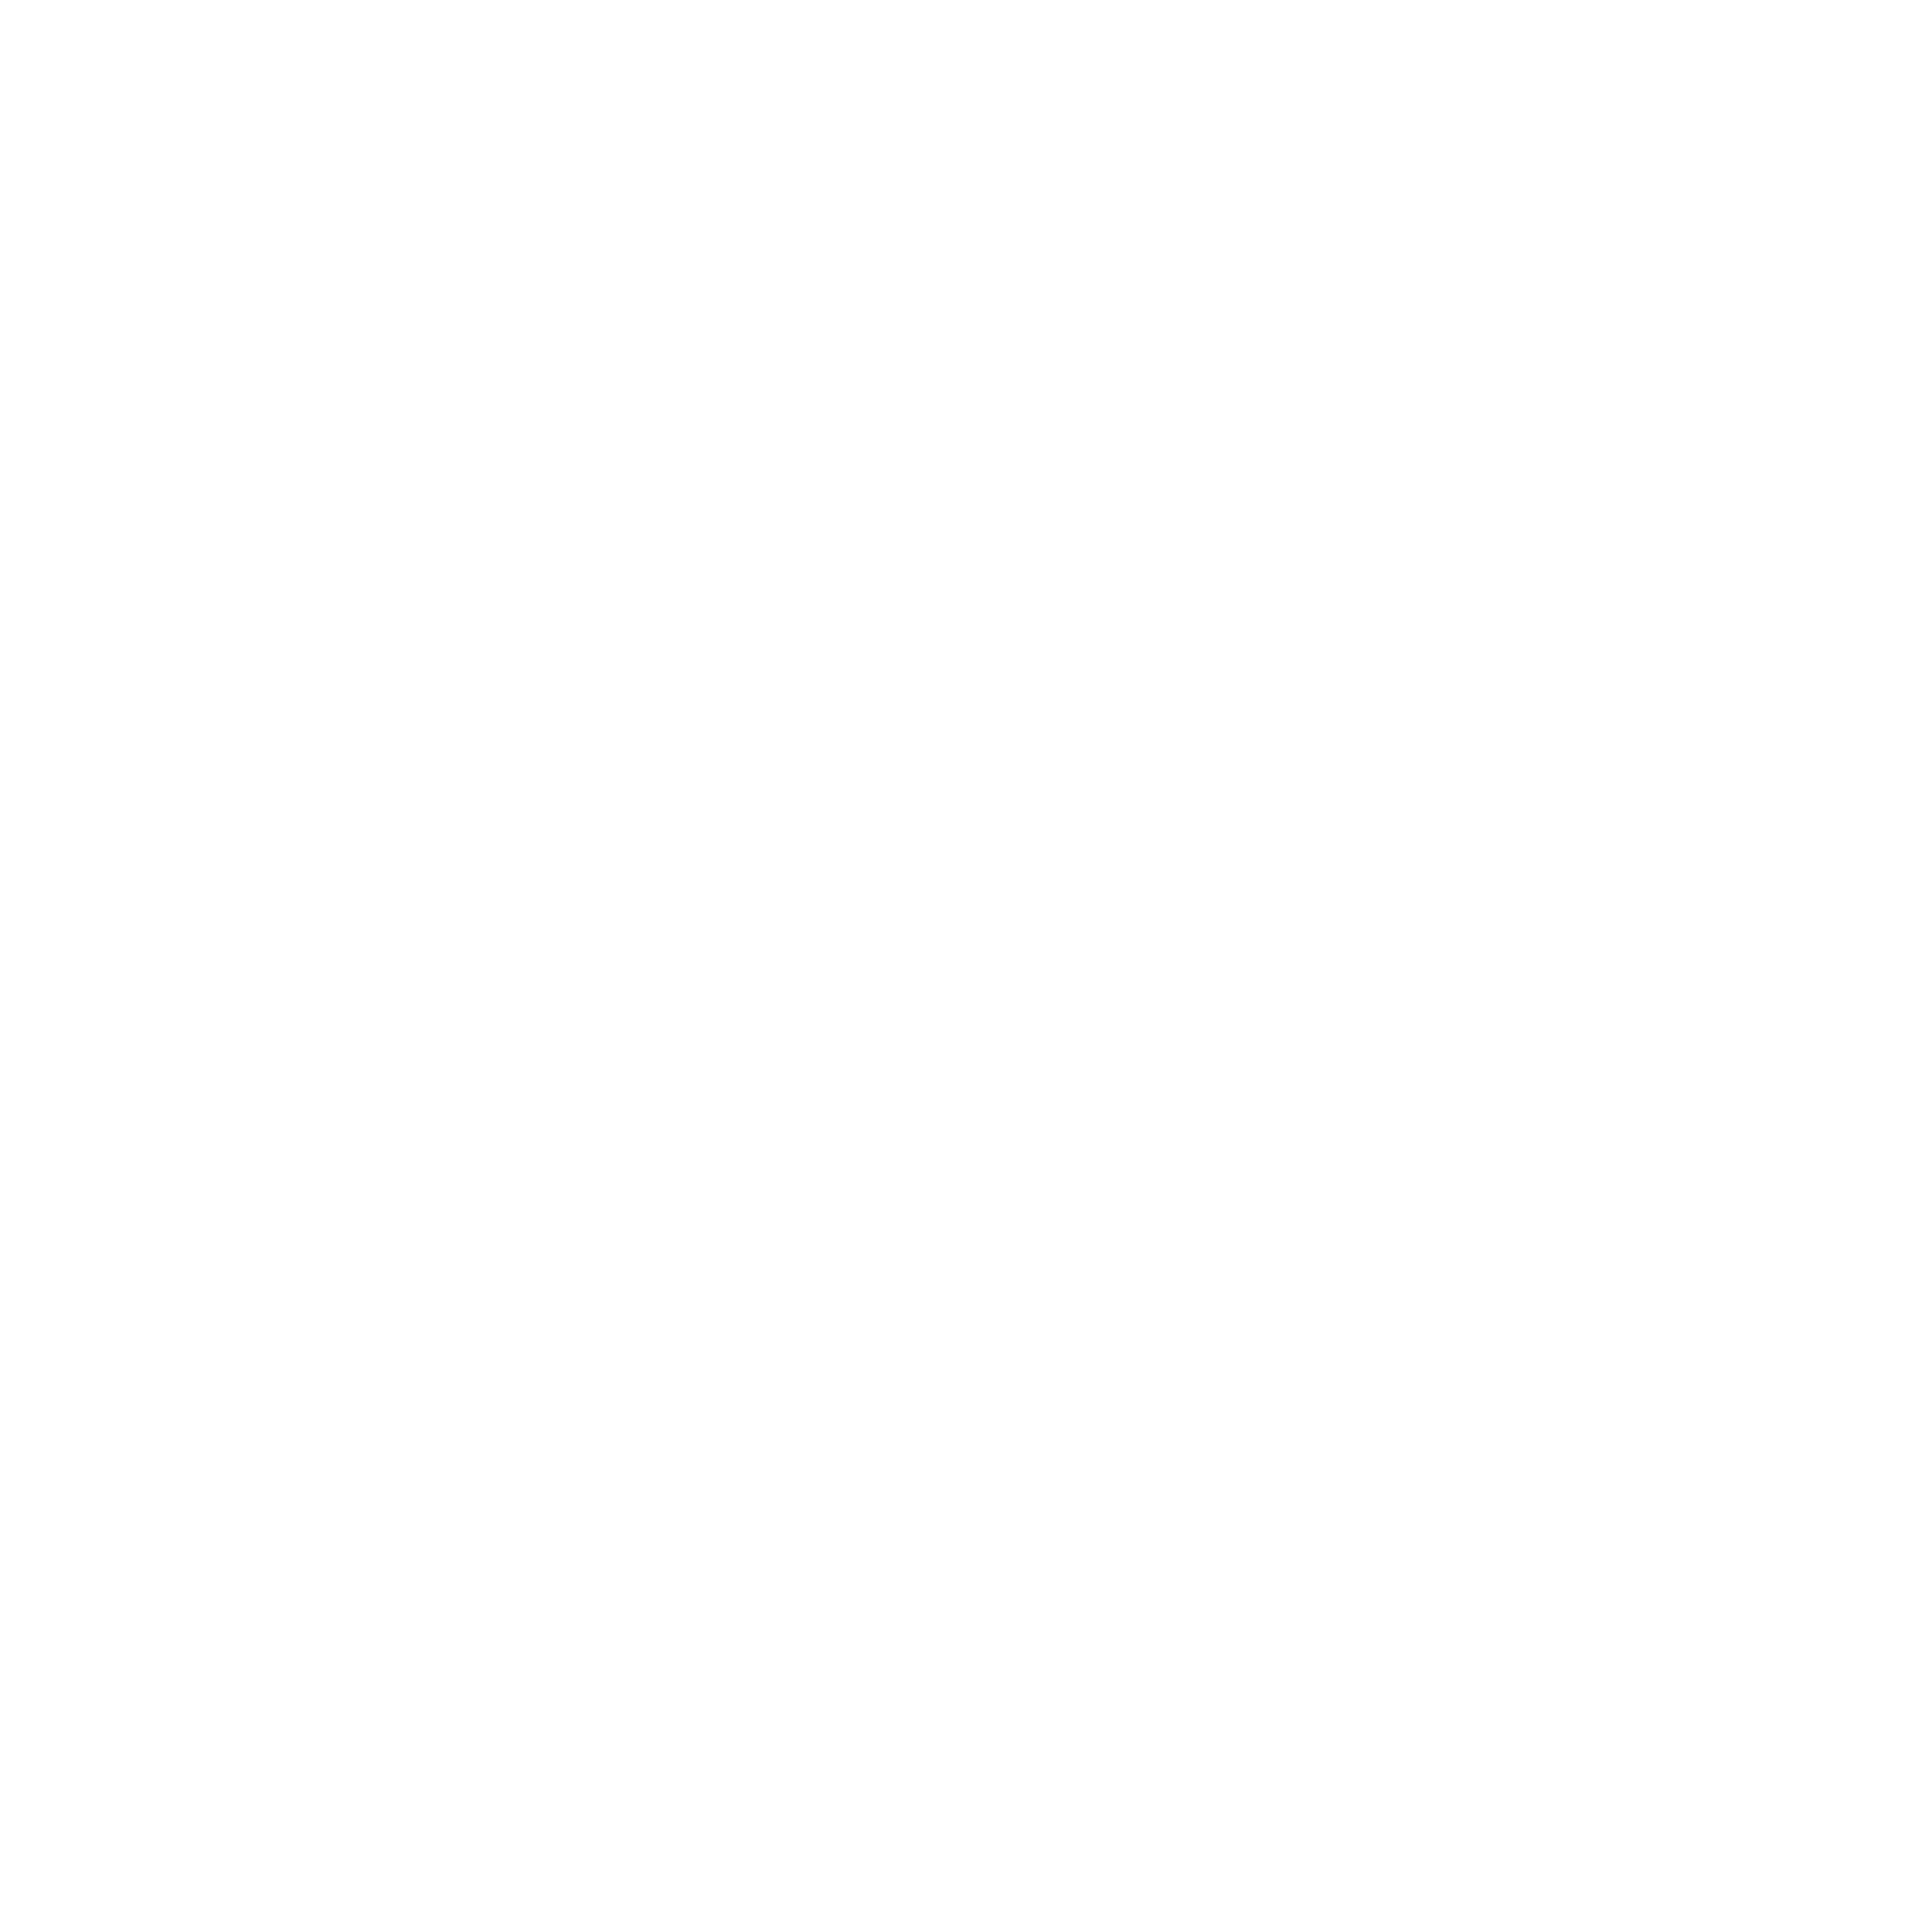 myxstem